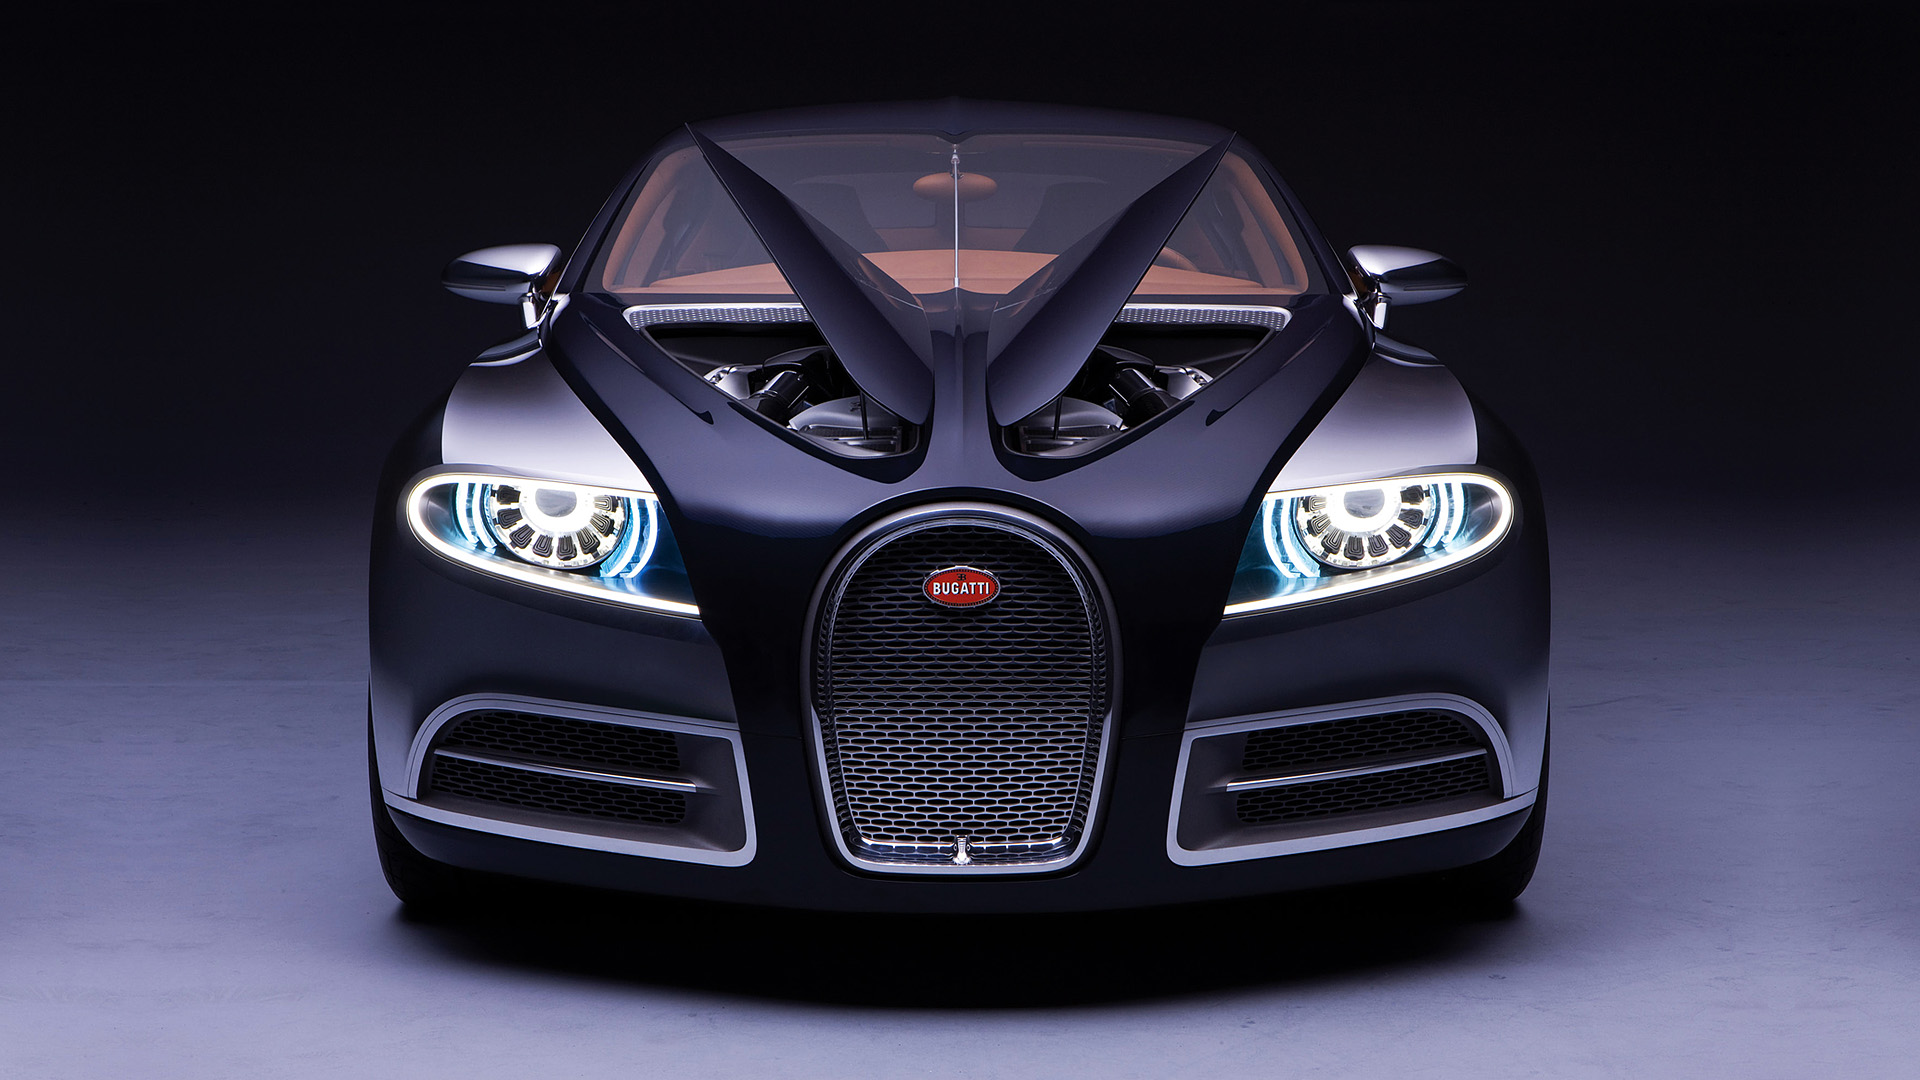  2009 Bugatti 16C Galibier Concept Wallpaper.